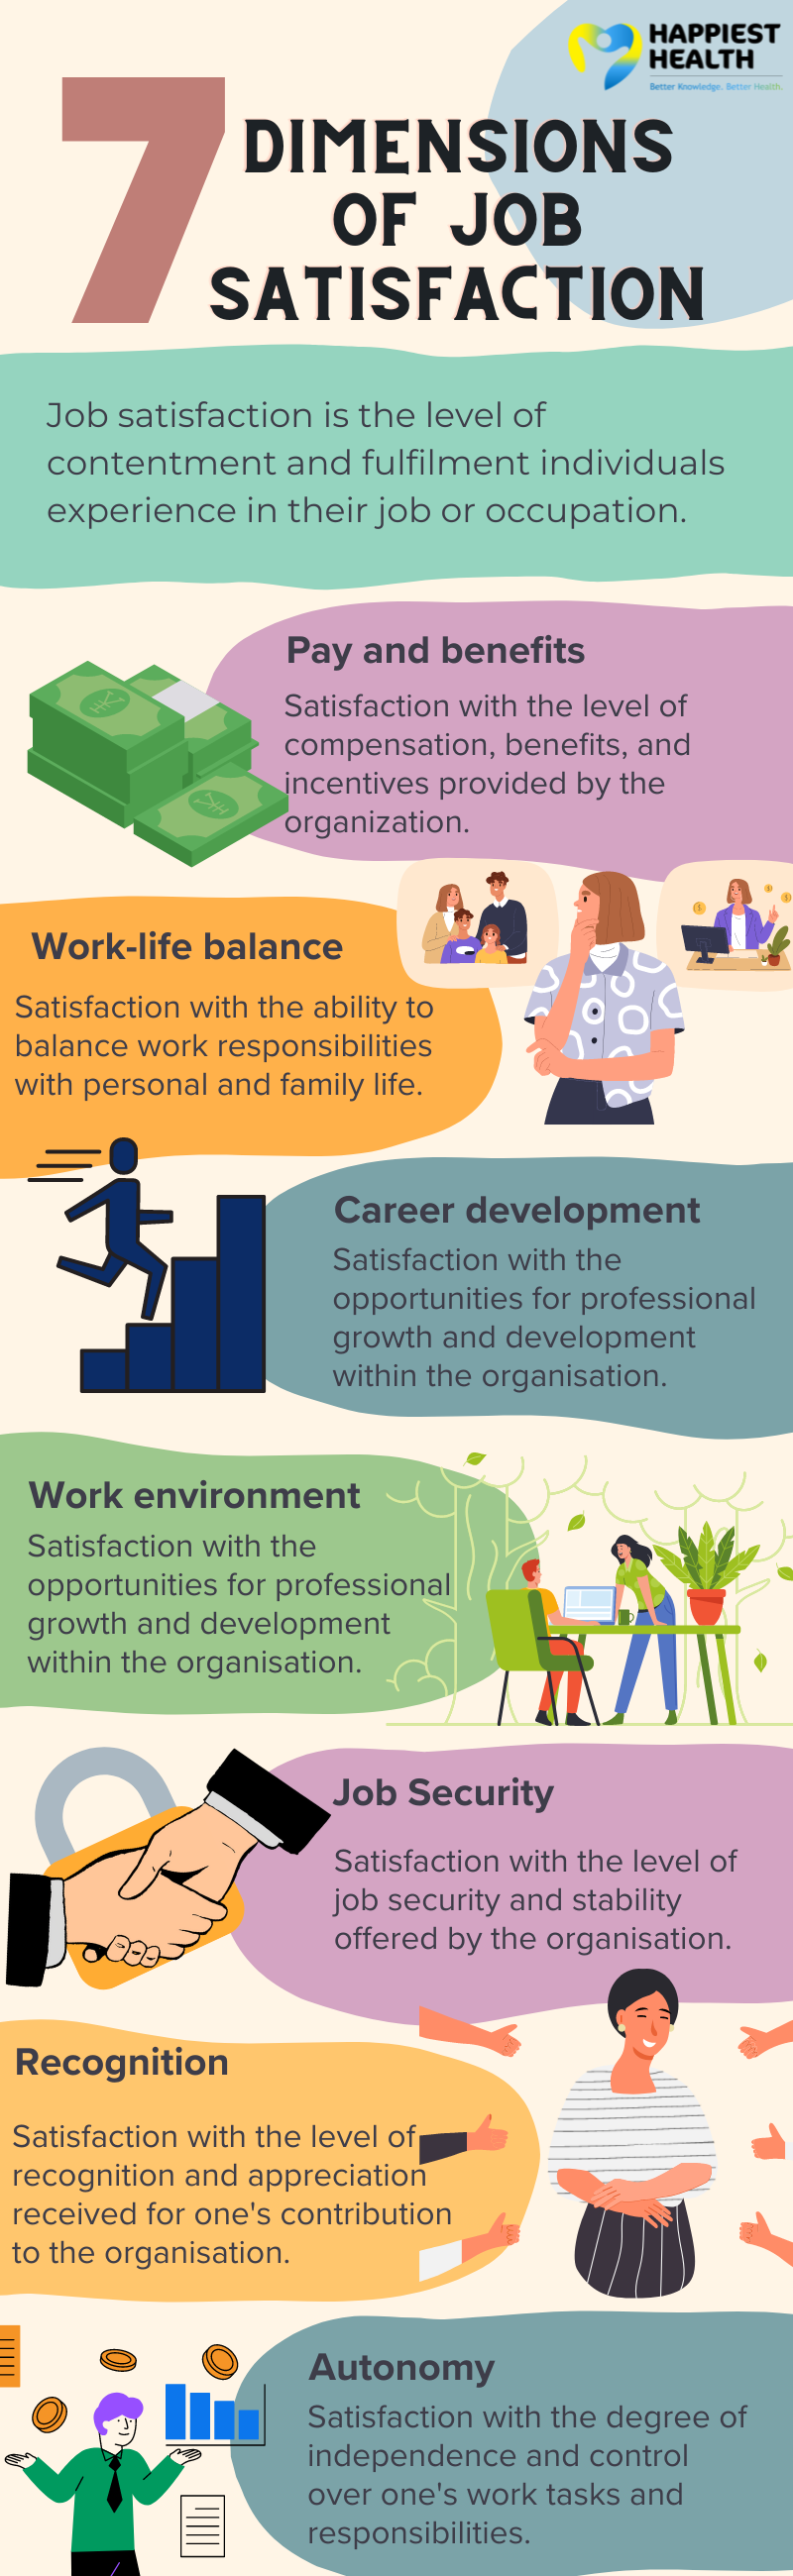 Job satisfaction, work-life balance, work environment, job security